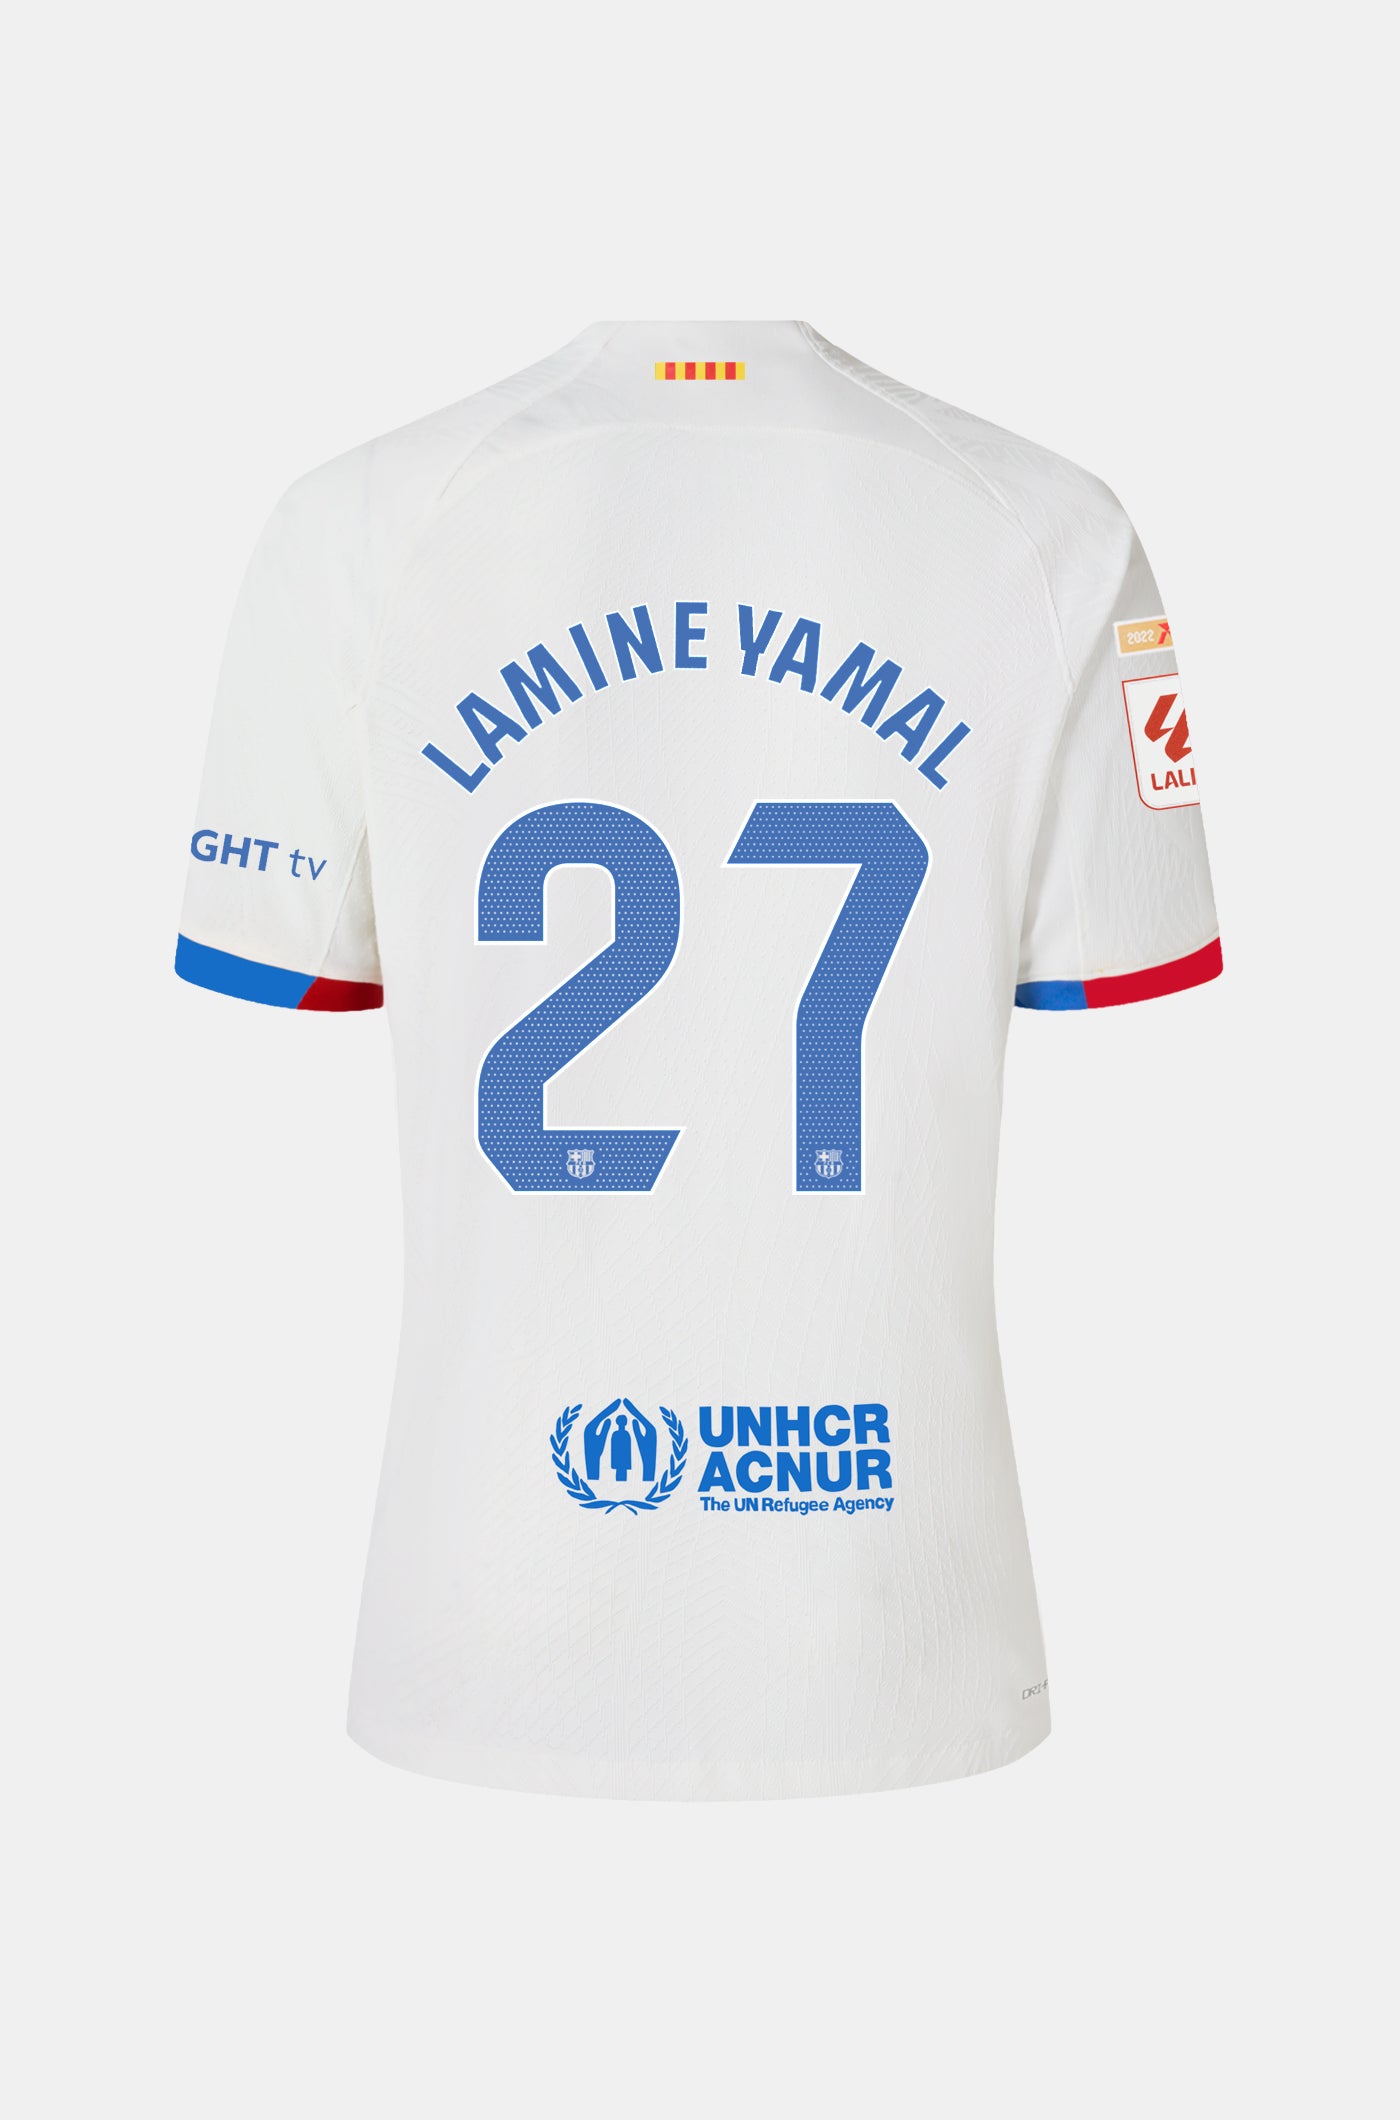 LFP FC Barcelona Away Shirt 23/24 Player’s Edition - Women - LAMINE YAMAL